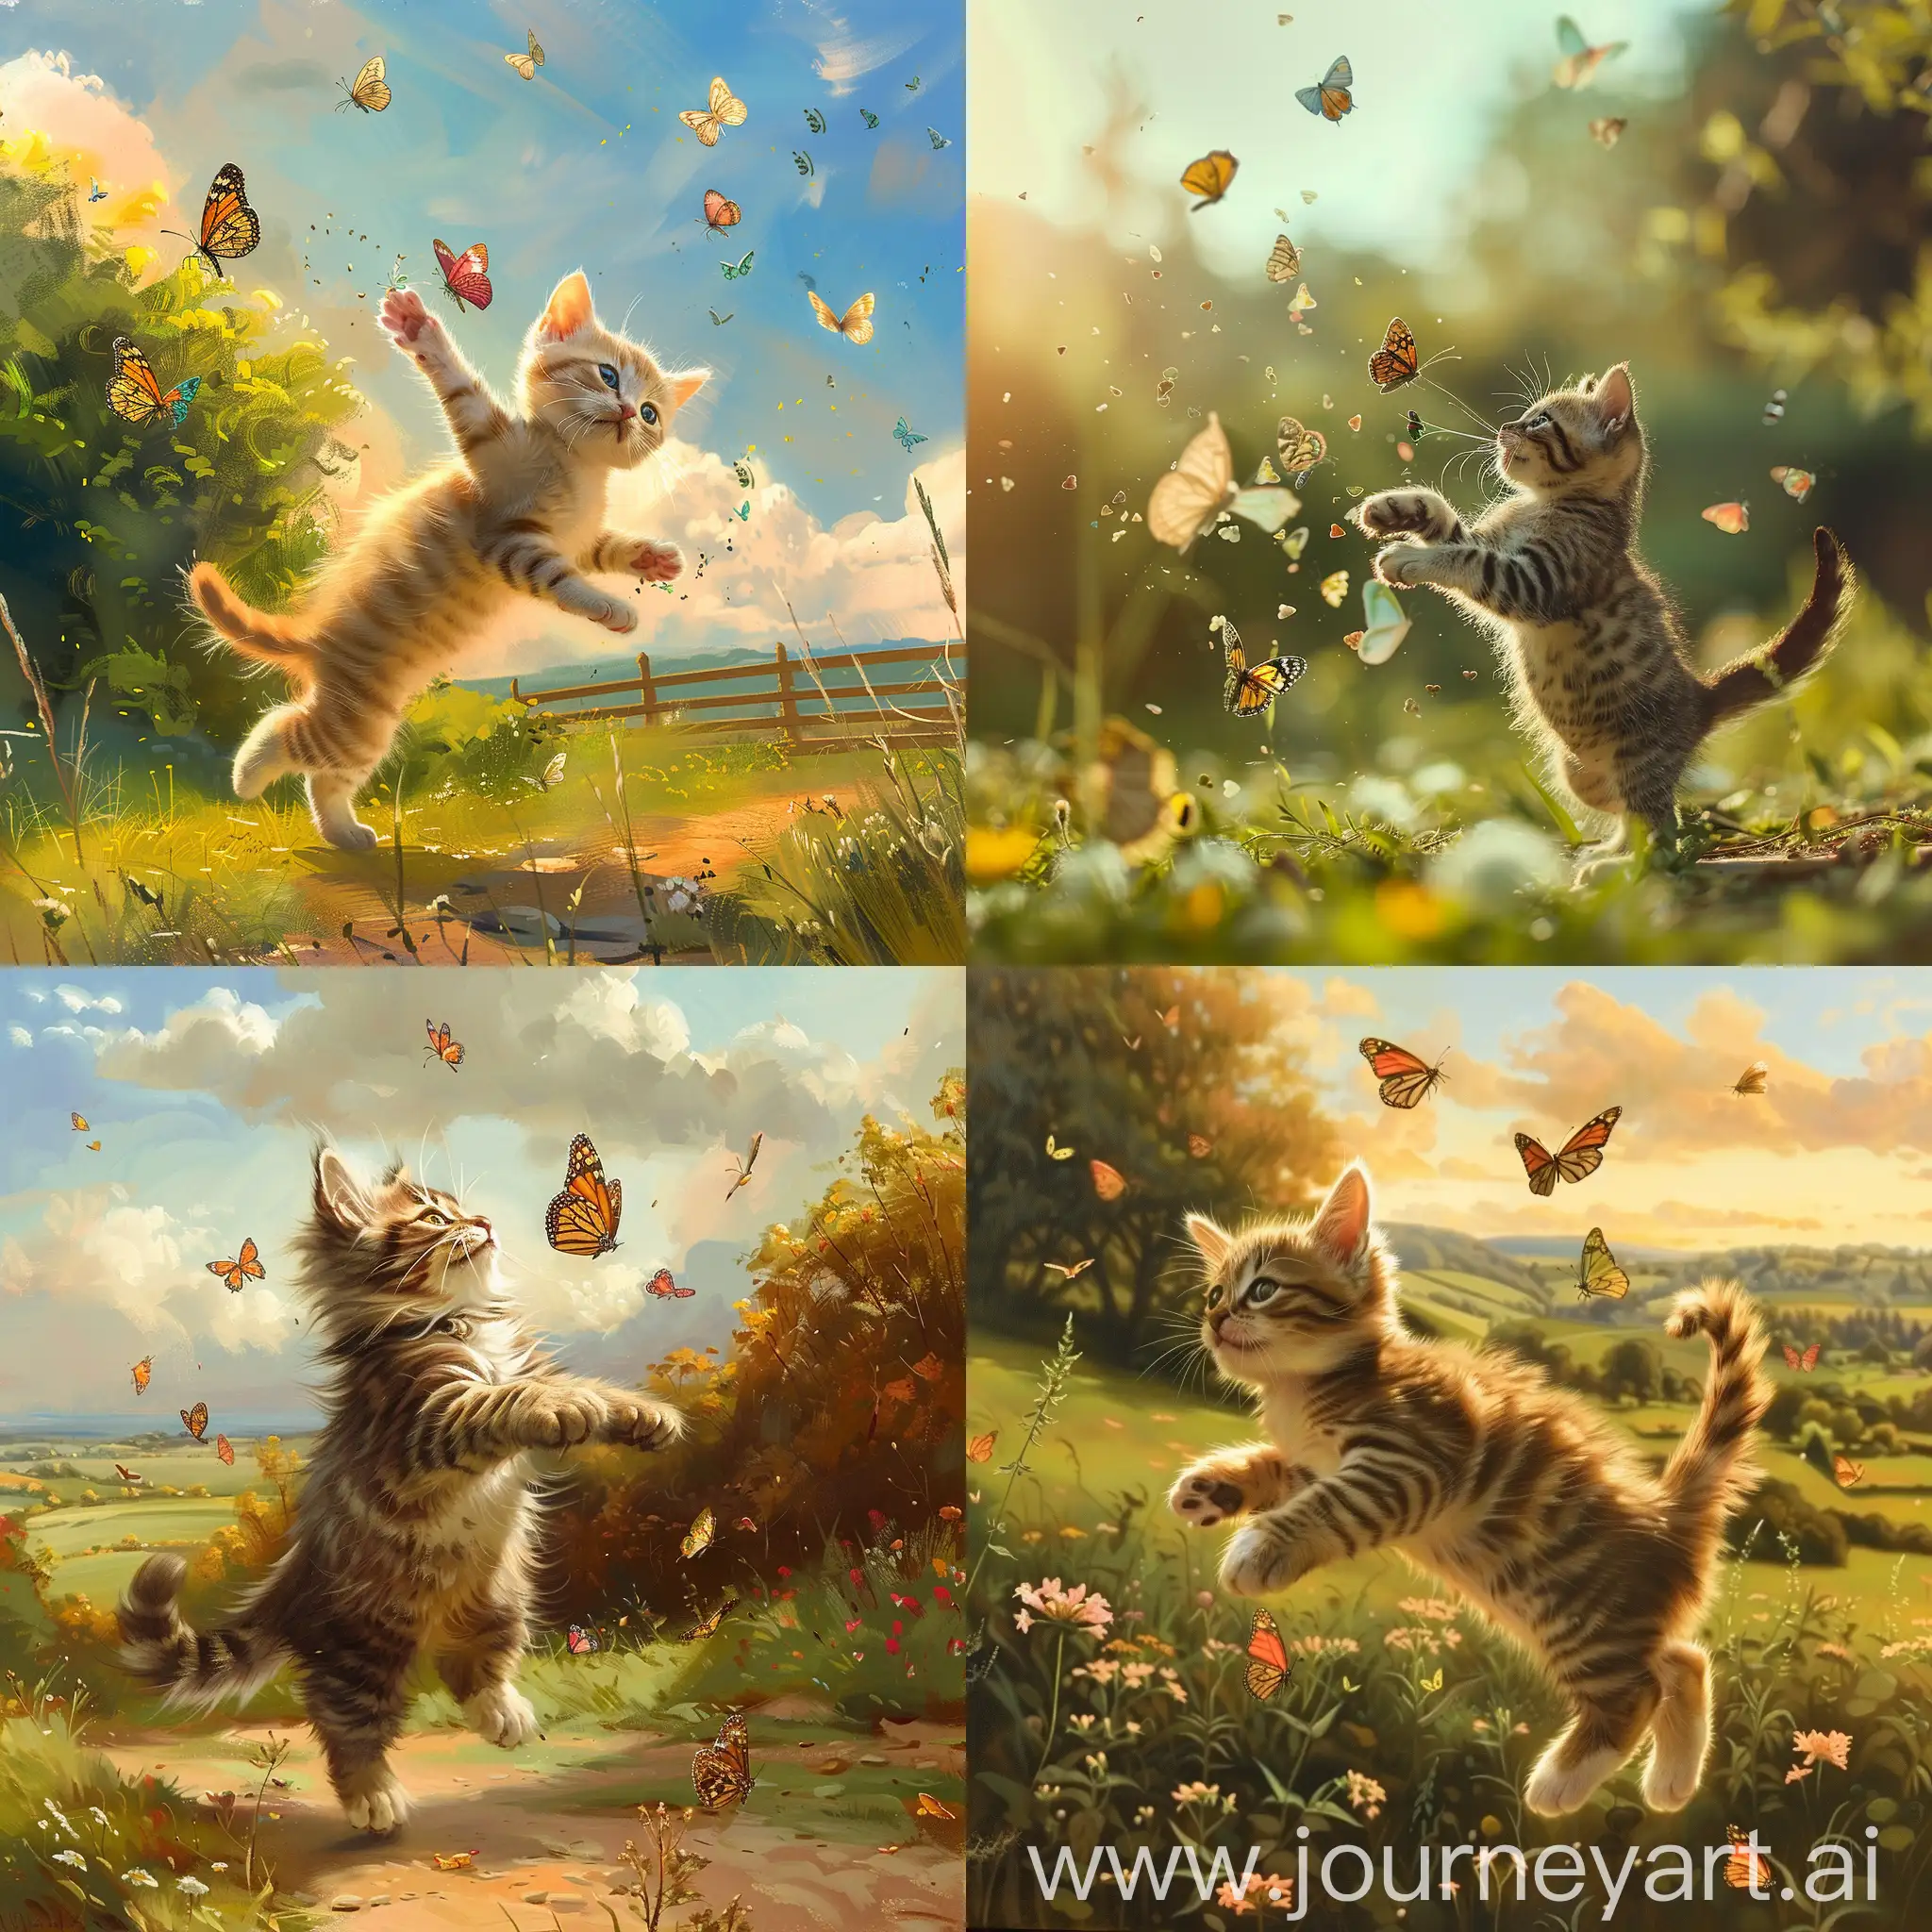 Un chaton court et saute pour attraper des papillons dans un joli décor de campagne